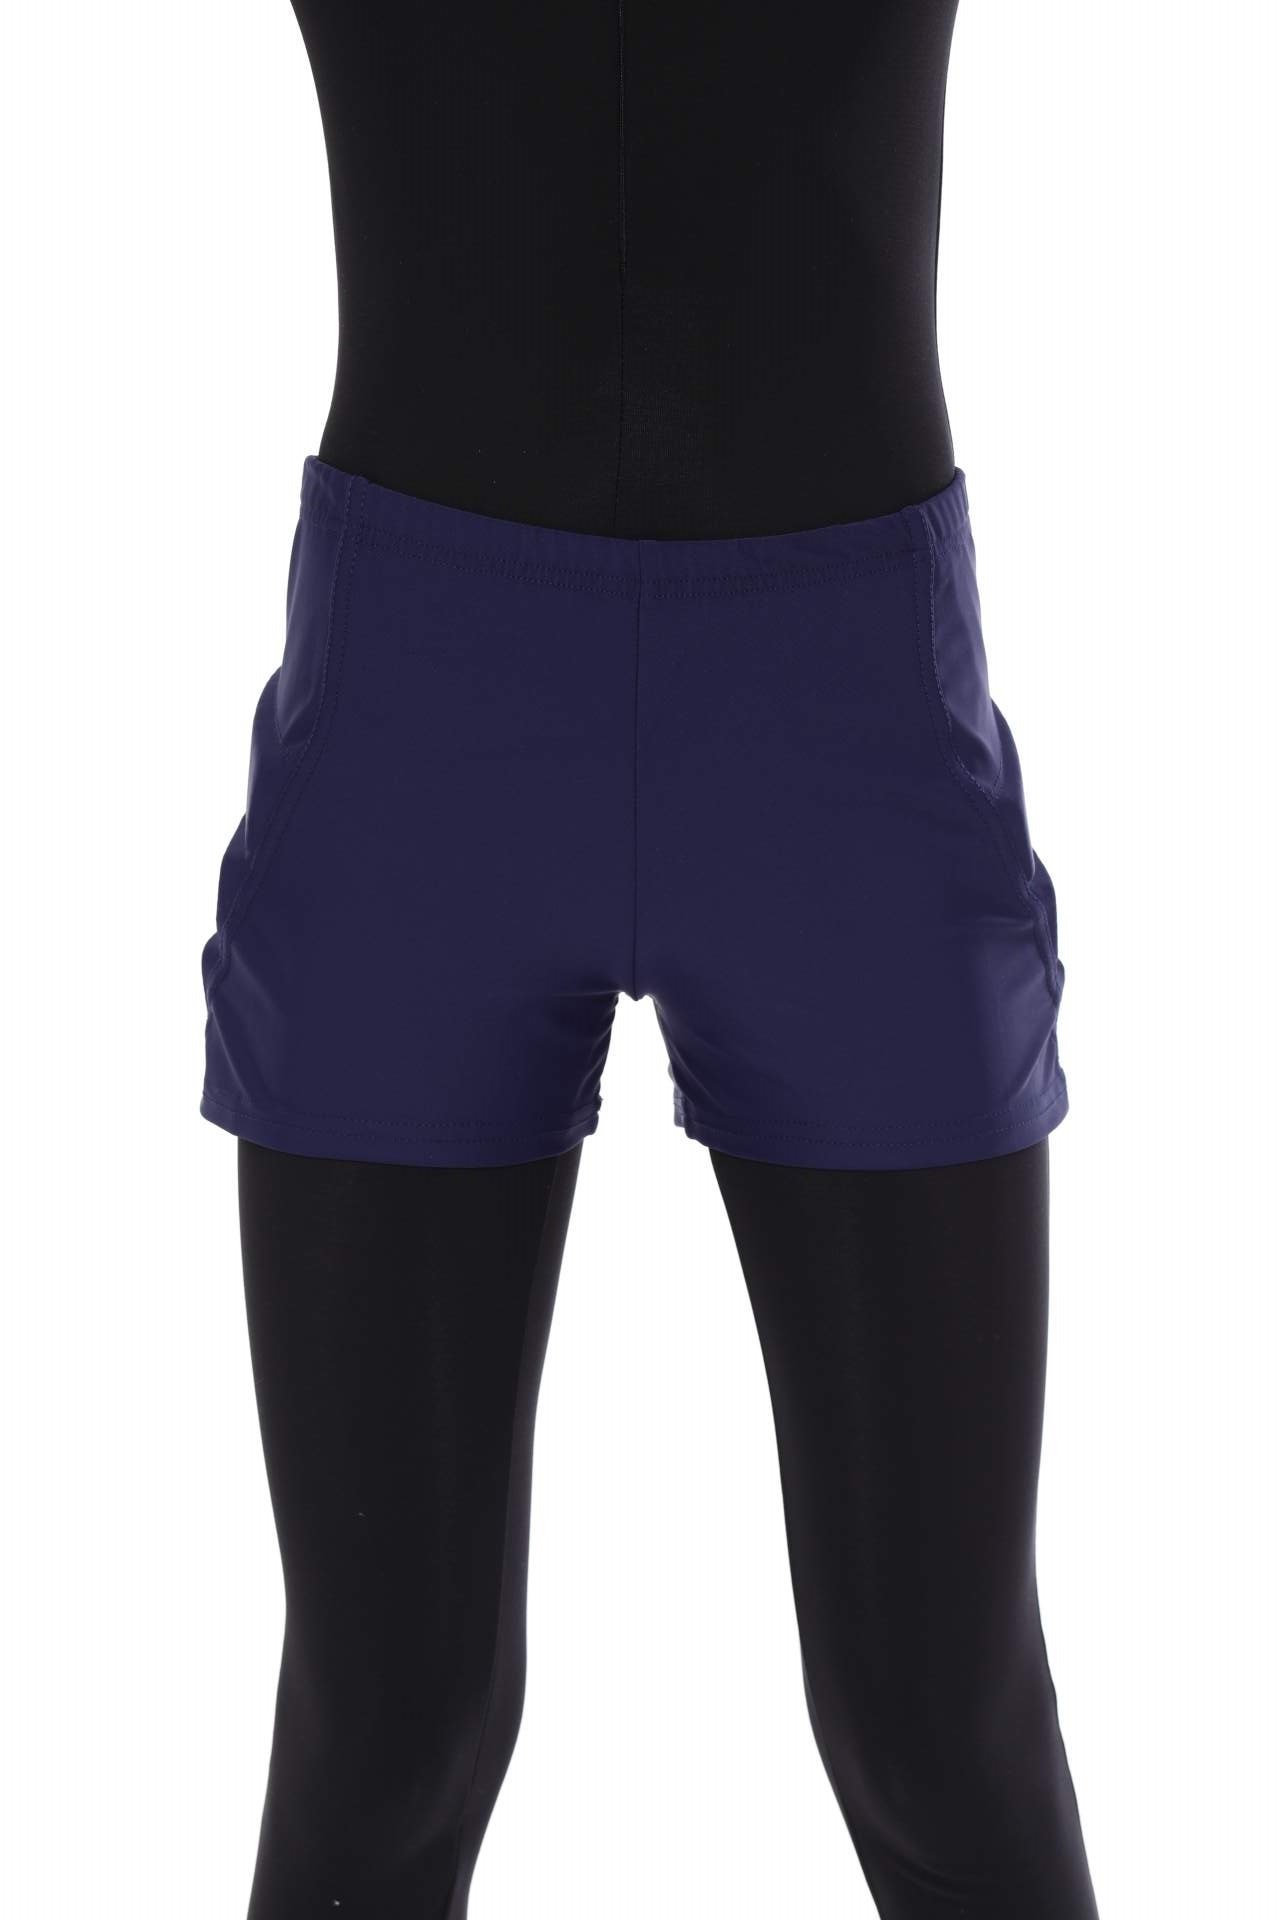 Защитные шорты для фигурного катания и роликов Chersa, цвет: темно-синий 146-152